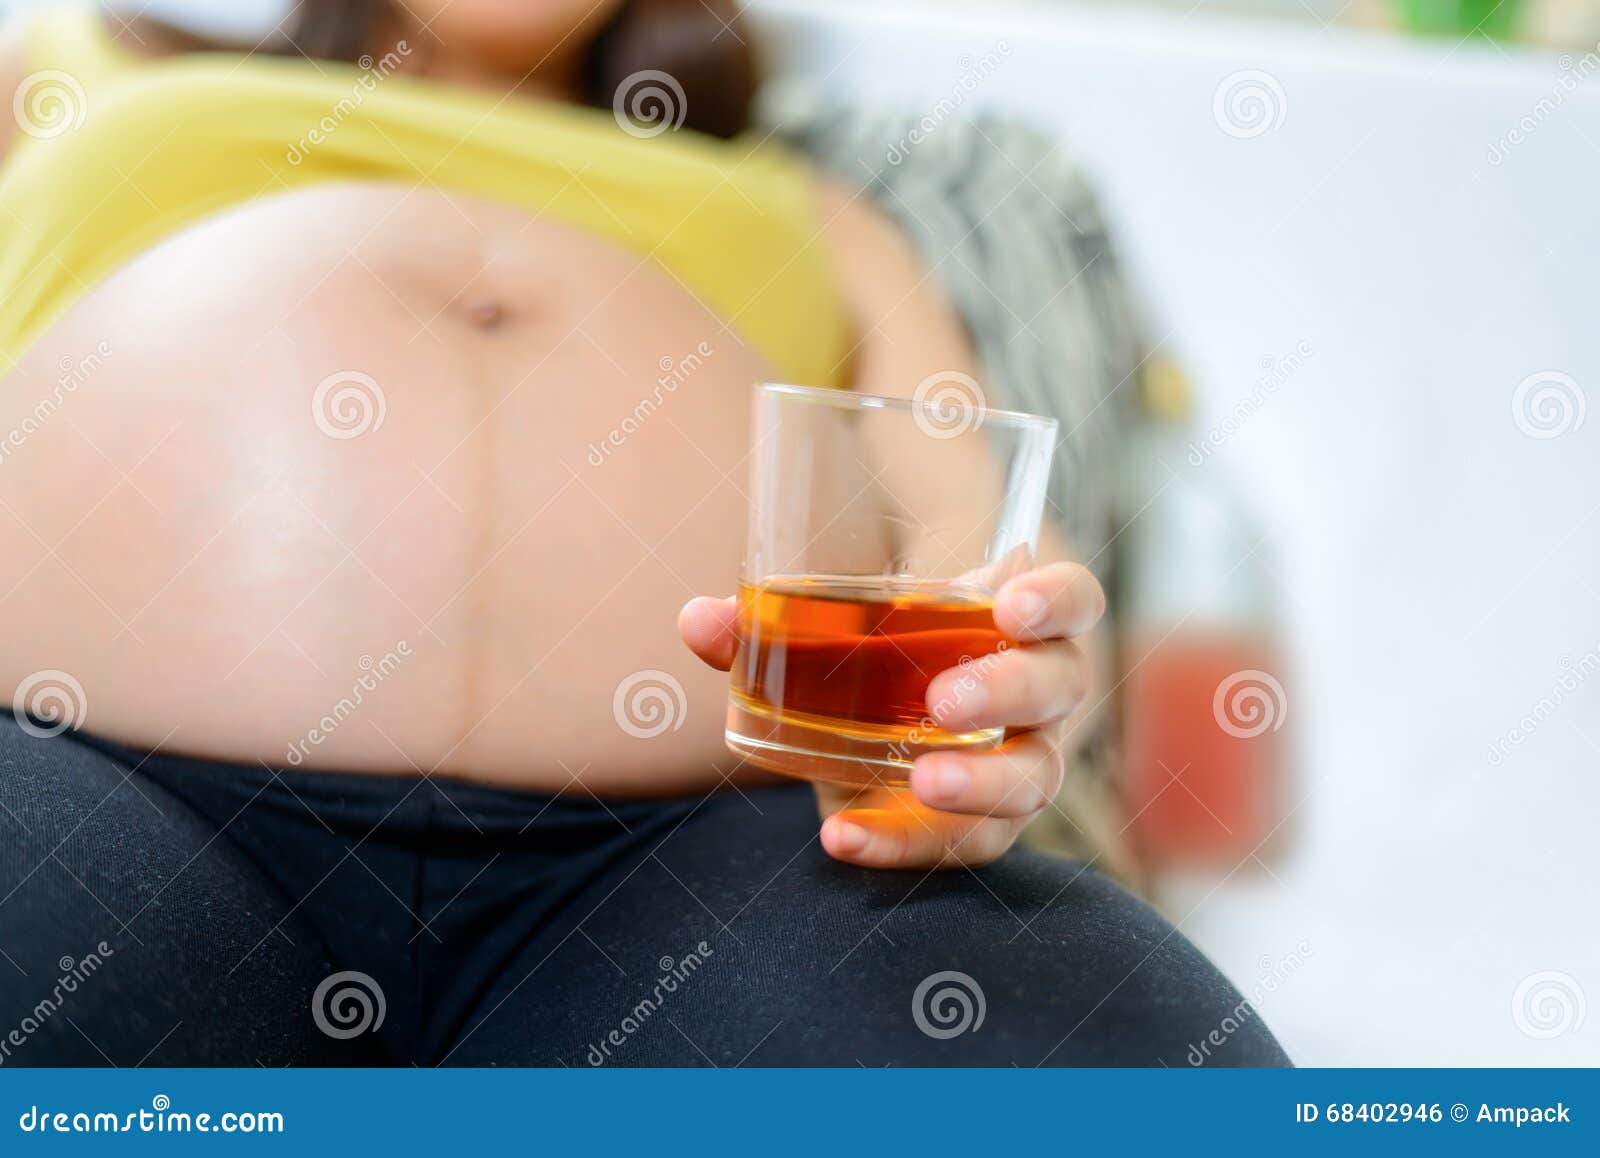 Пьющие беременные после. Беременные и алкоголь. Алкоголь и беременность. Пиво для беременных женщин.